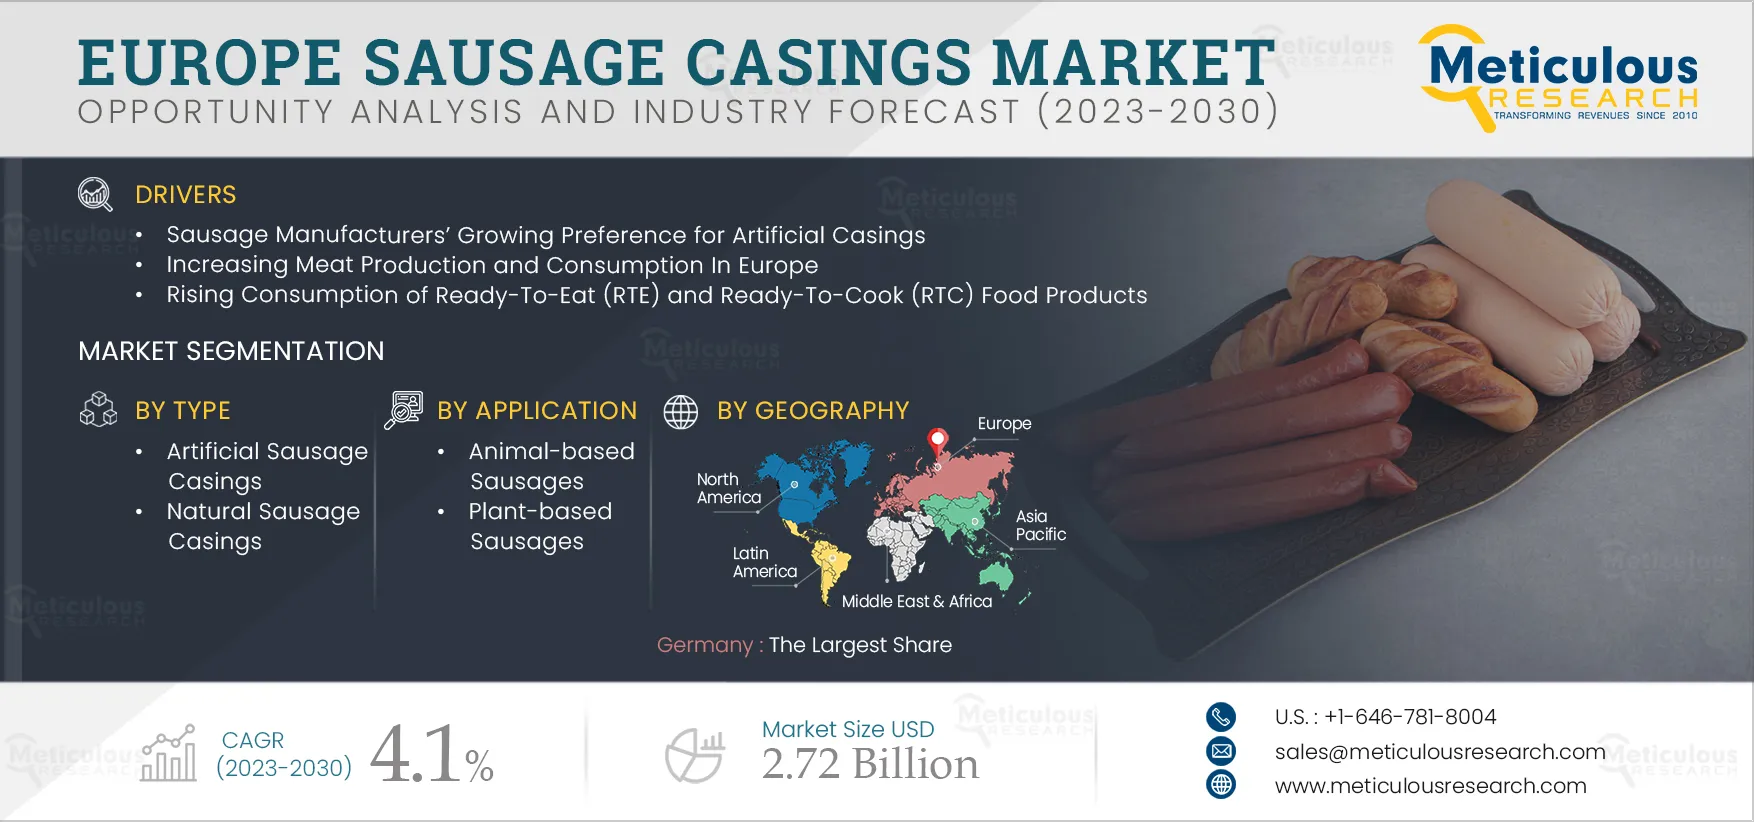 Europe Sausage Casings Market